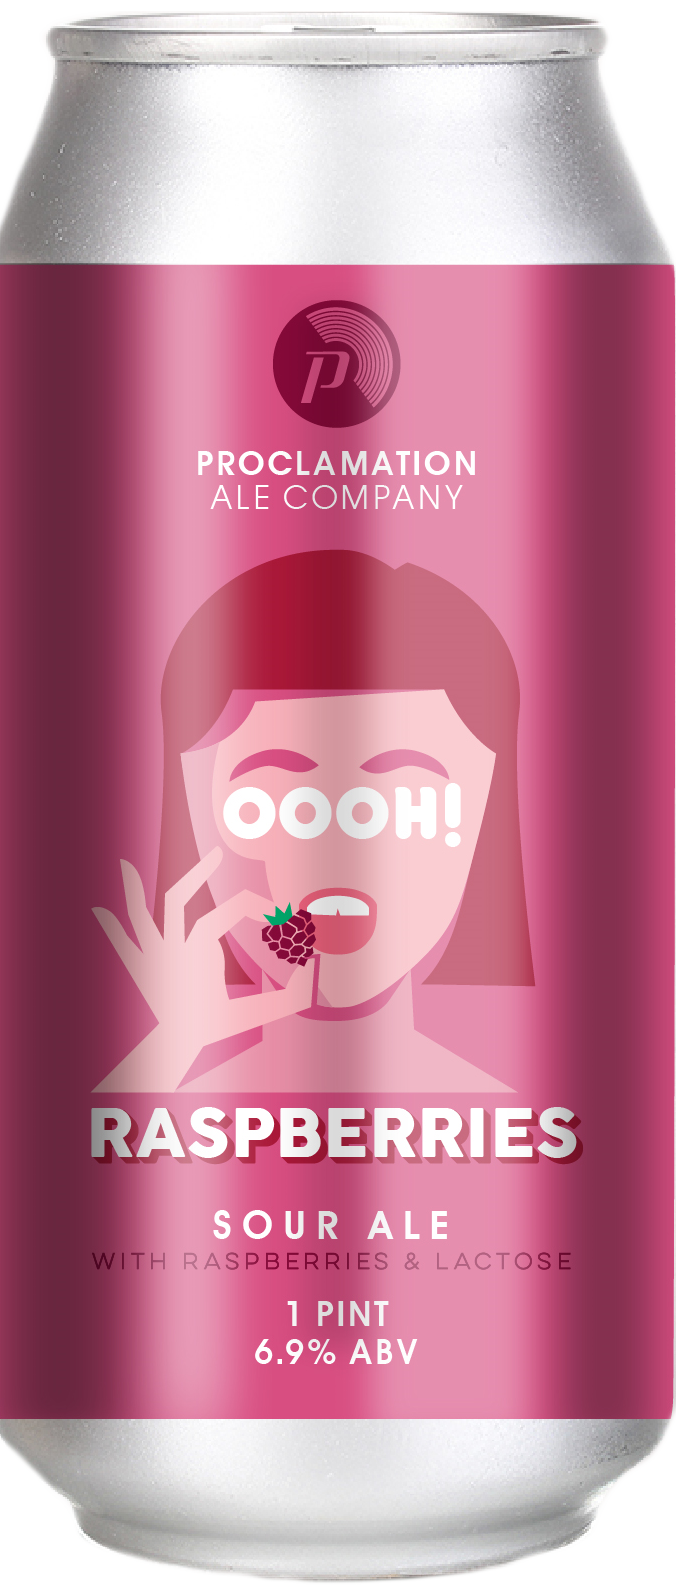 Produktbild von Proclamation Oooh! Raspberries